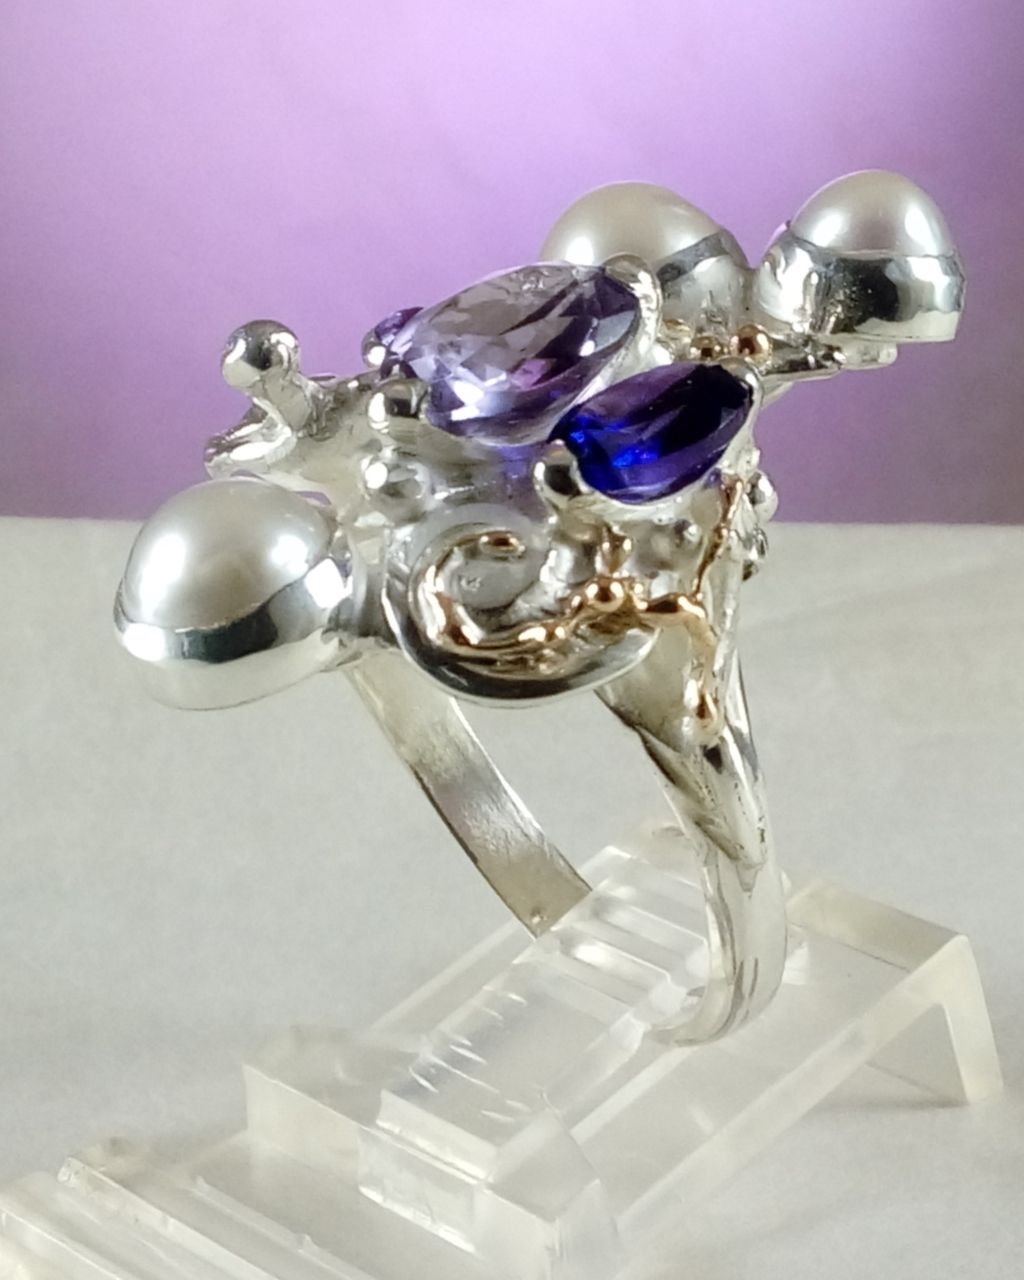 gregory pyra piro skulpturell ring 8070, smycken som säljs på konstgallerier, smycken som säljs på hantverksgallerier, handgjorda ametistsmycken, handgjorda pärlsmycken, smycken som ingen annan har, skulpturala smycken, handgjorda ring med ametist och pärla